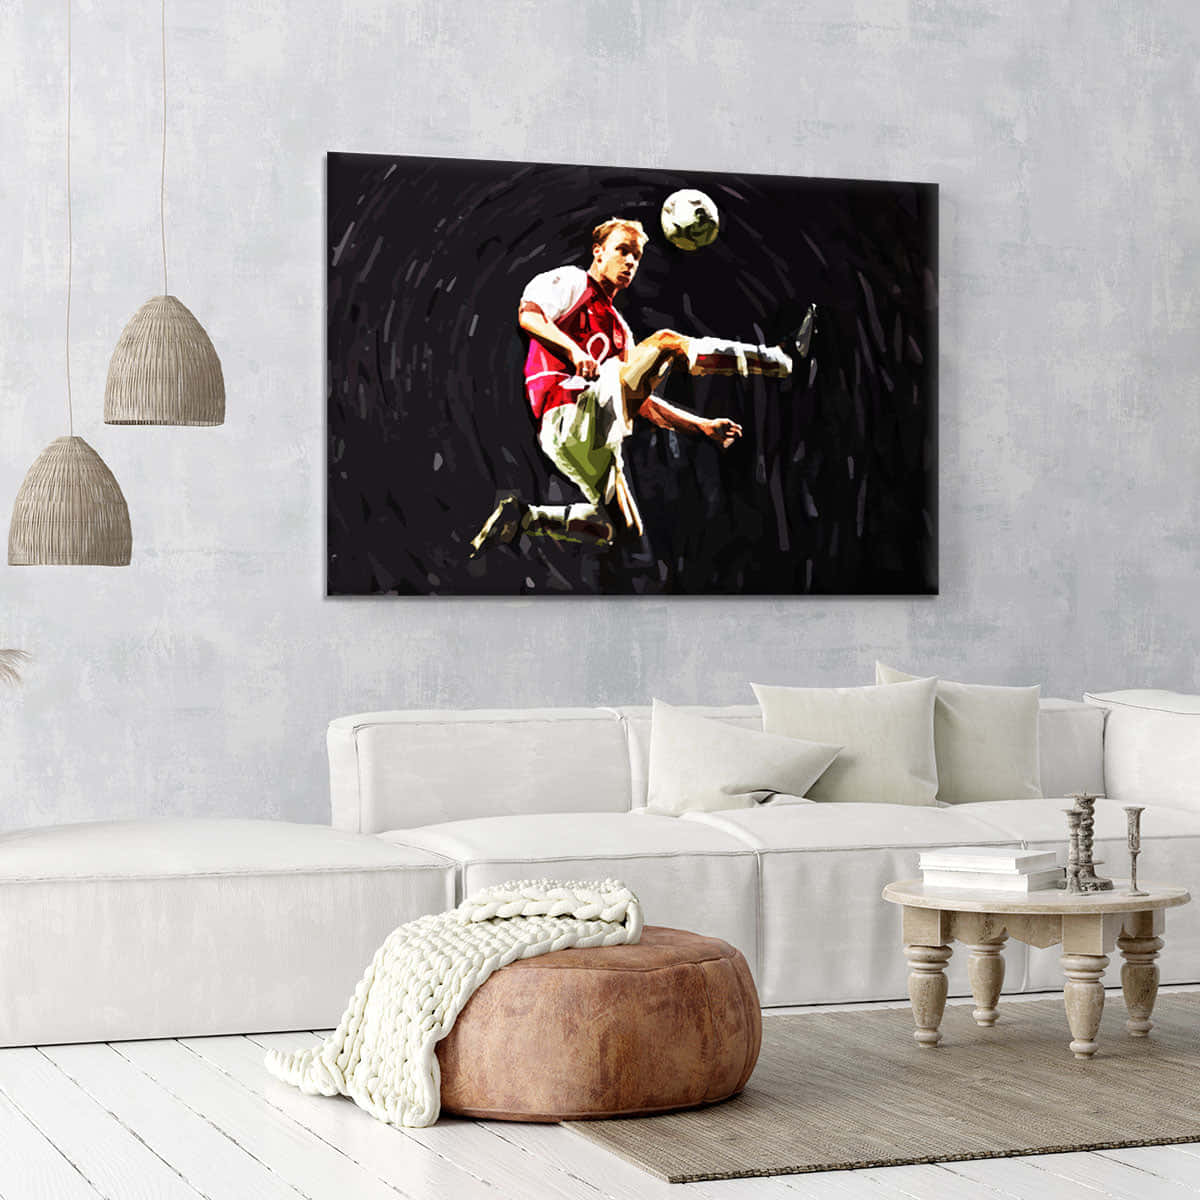 Artede La Pintura De Dennis Bergkamp Para La Pared De La Sala De Estar. Fondo de pantalla